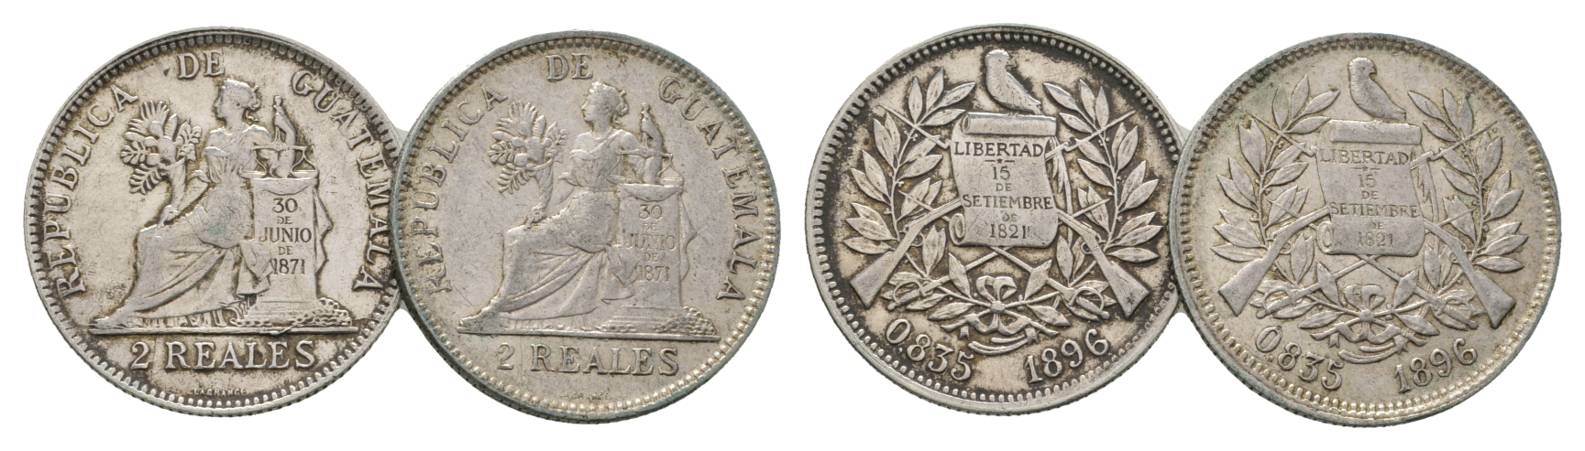  Guatemala, 2 Real 1896   